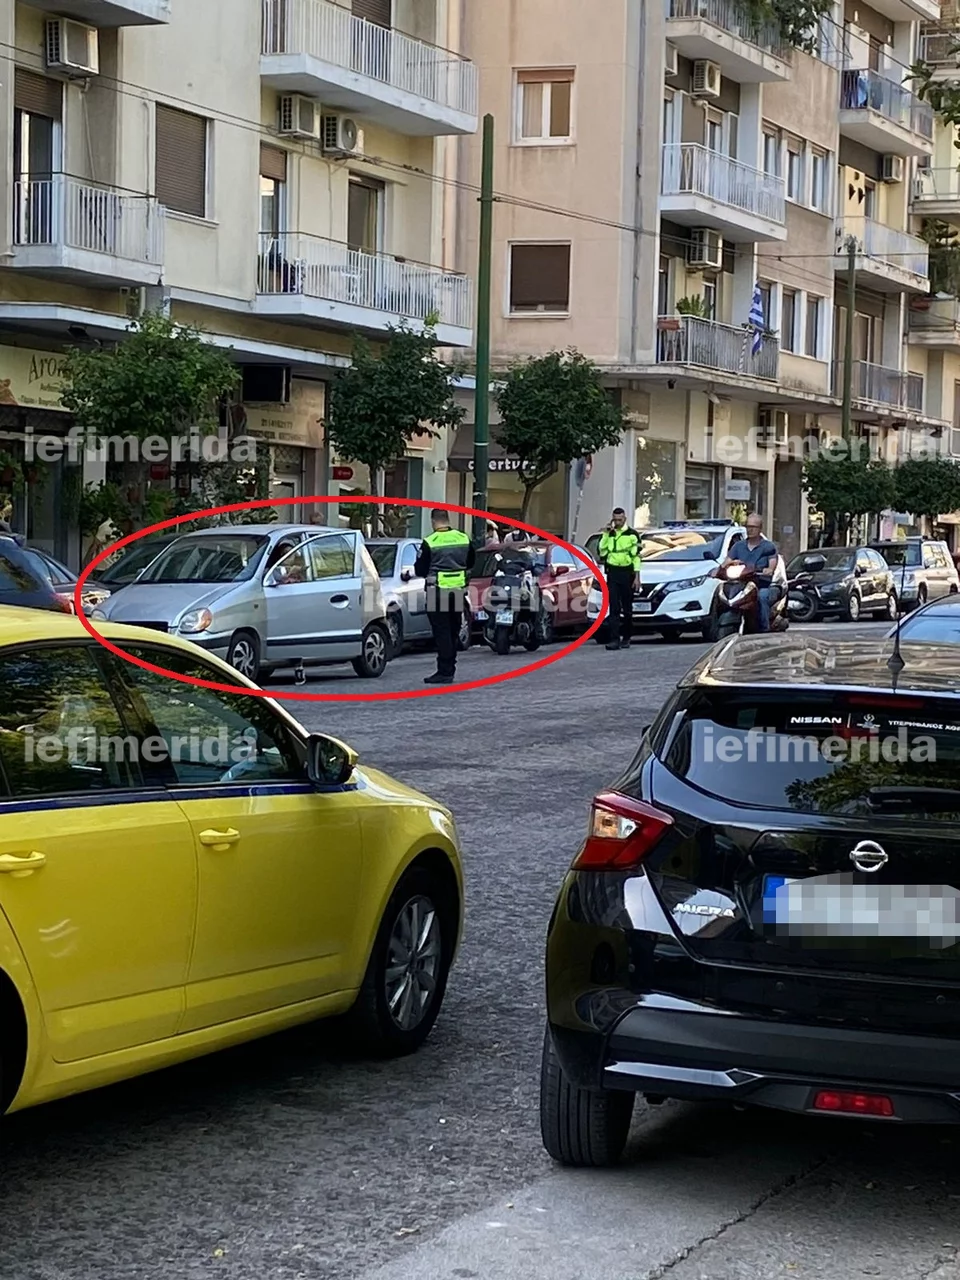 Το ΙΧ που είχε διπλοπαρκάρει και χτύπησε τον αστυνομικό / Φωτογραφία: iefimerida.gr